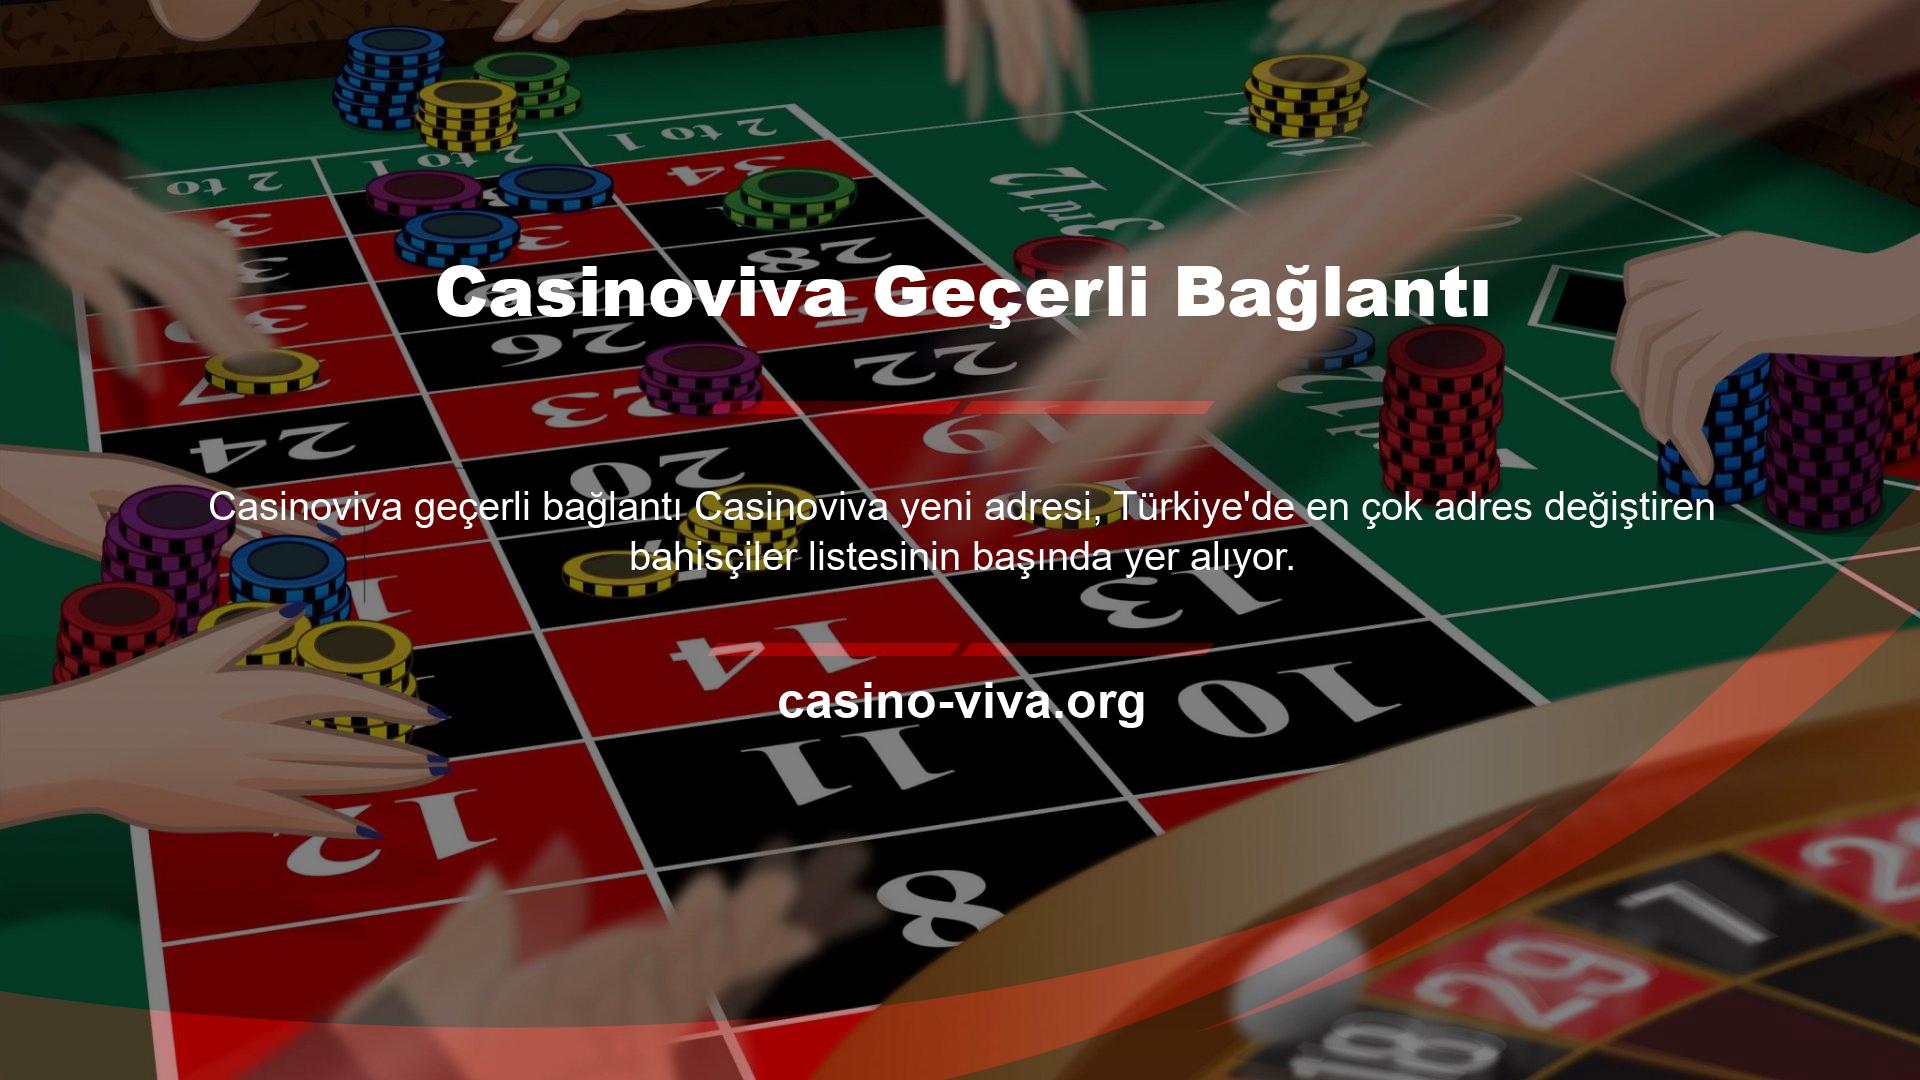 Casinoviva Geçerli Bağlantı